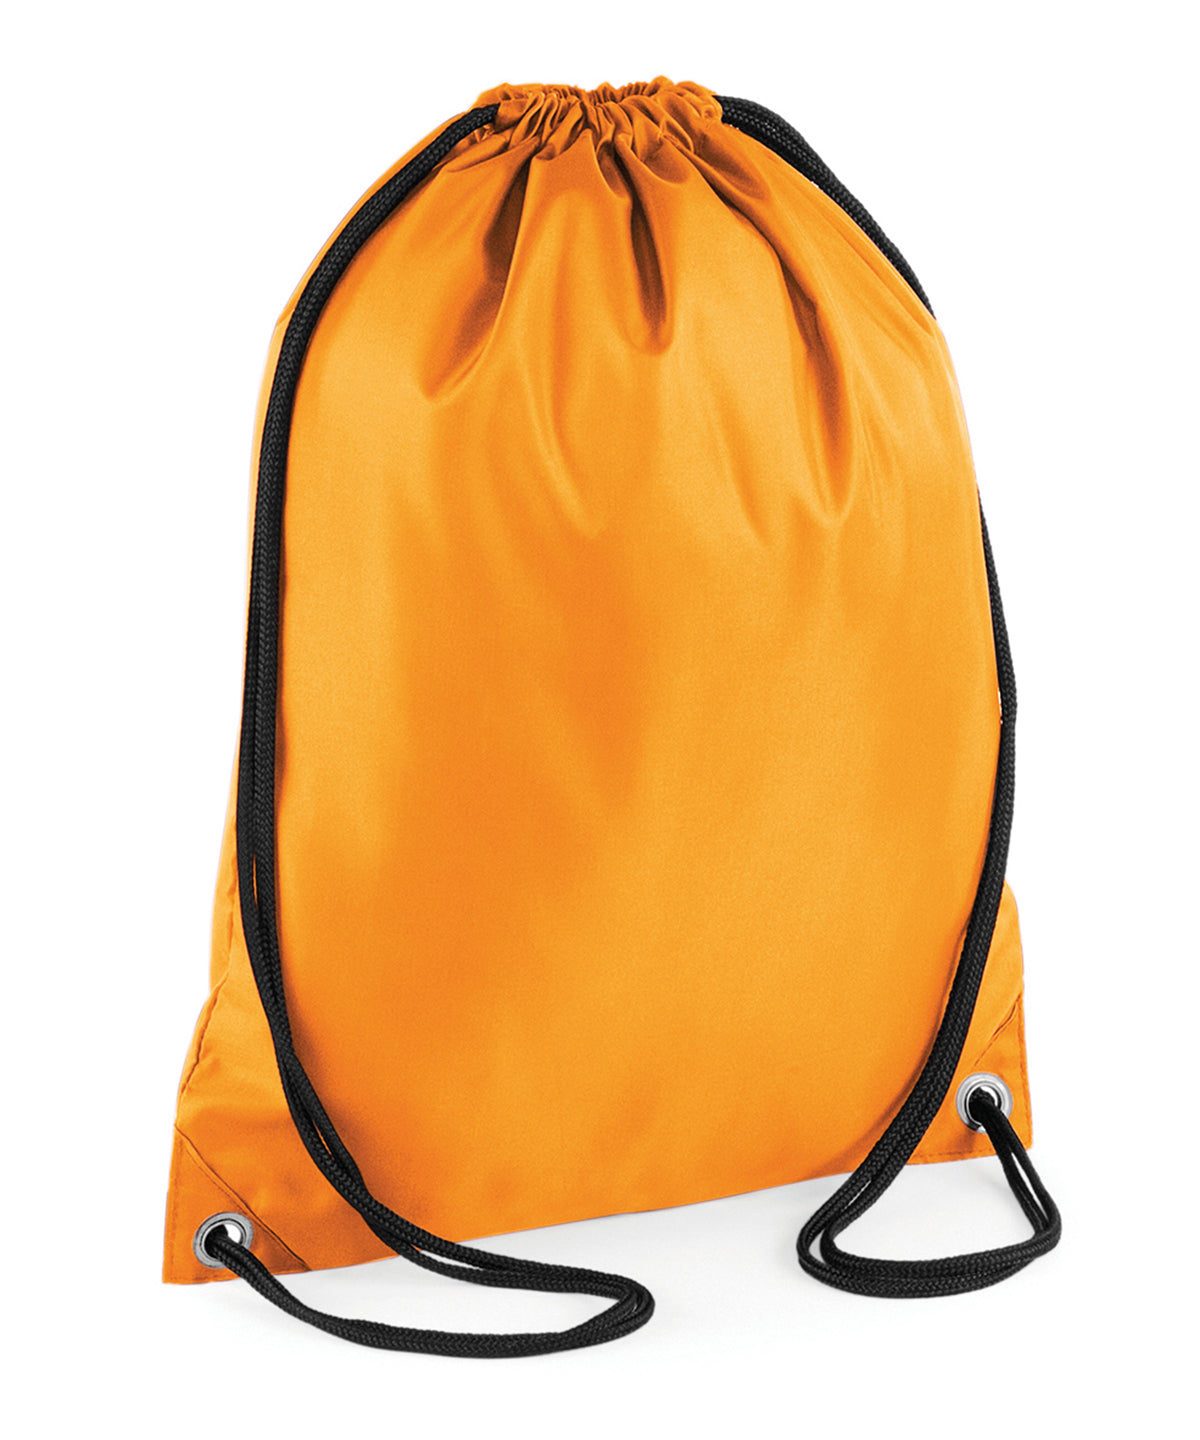 Personalised Bags - Mid Orange Bagbase Budget gymsac